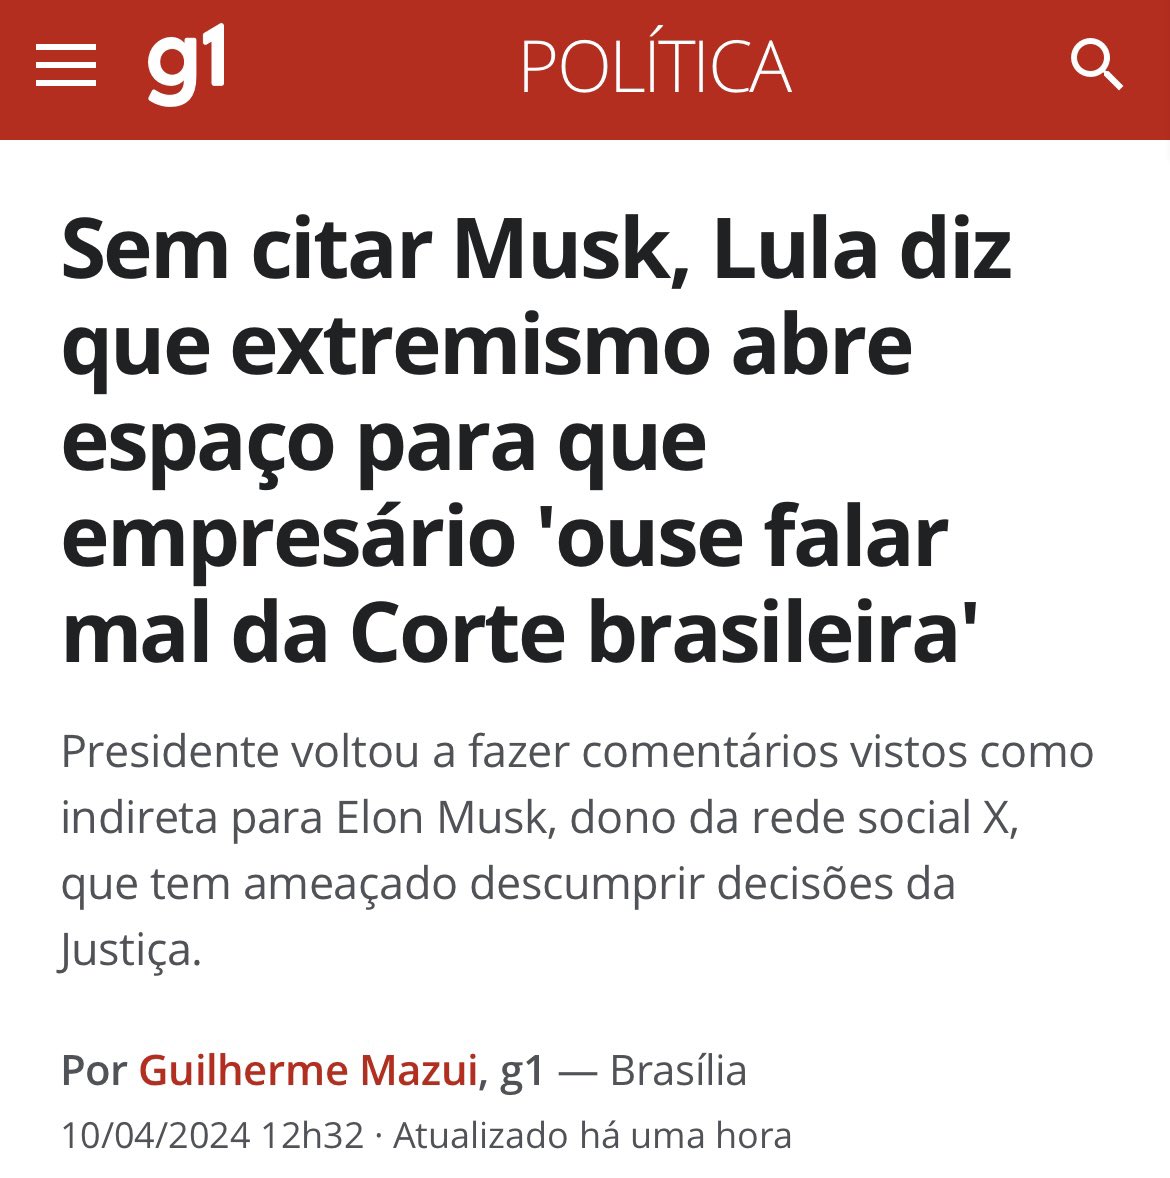 Brasil 🇧🇷: Lula declarou nesta quarta (10) que o crescimento do extremismo abre espaço para que 'empresário americano, que nunca produziu um pé de capim desse país, ouse falar mal da Corte brasileira, dos ministros brasileiros e do povo brasileiro'.